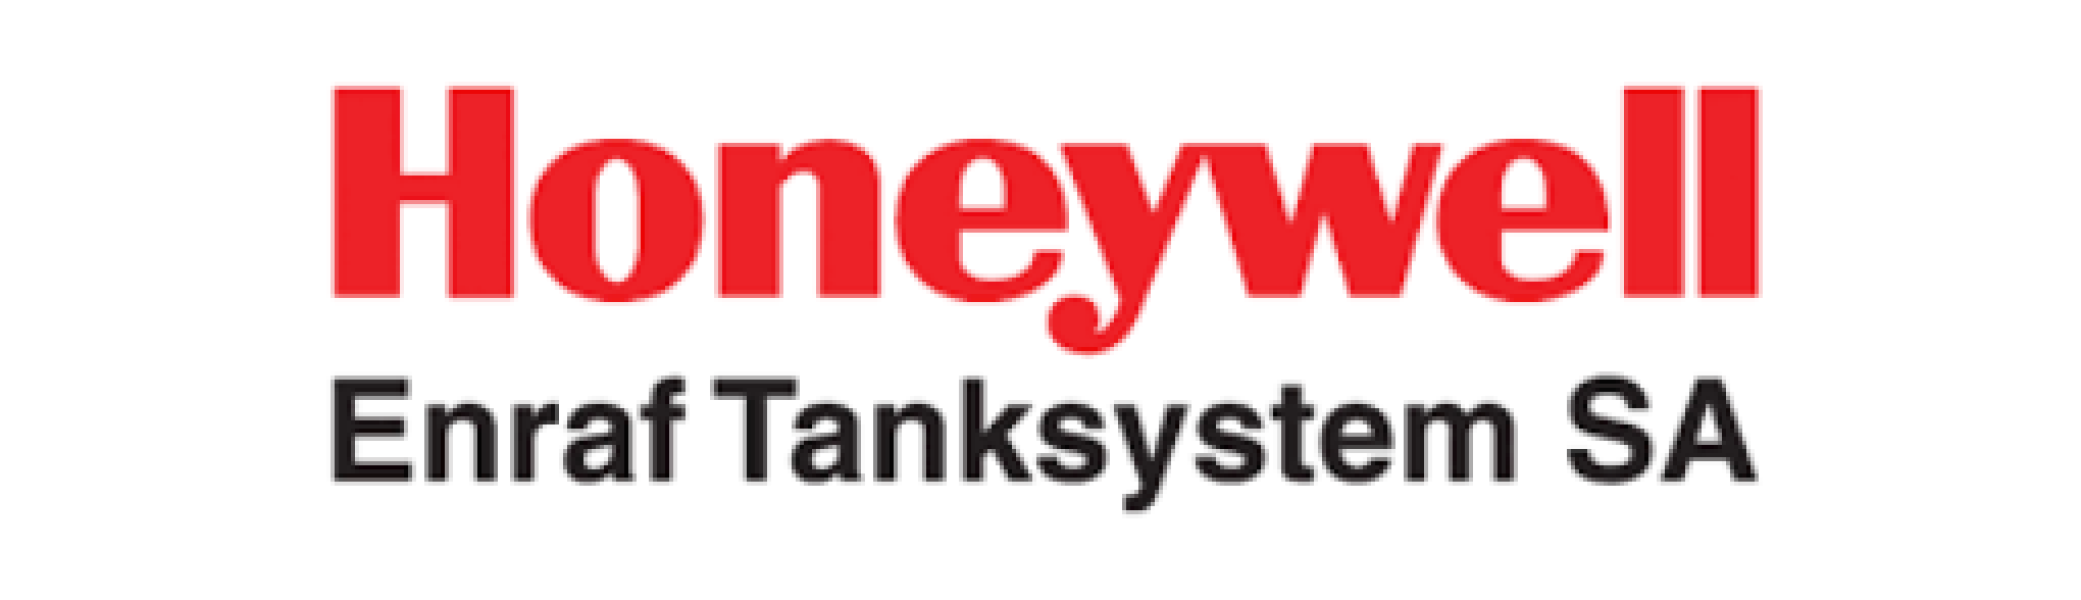 Honeywell Enraf Tanksystem